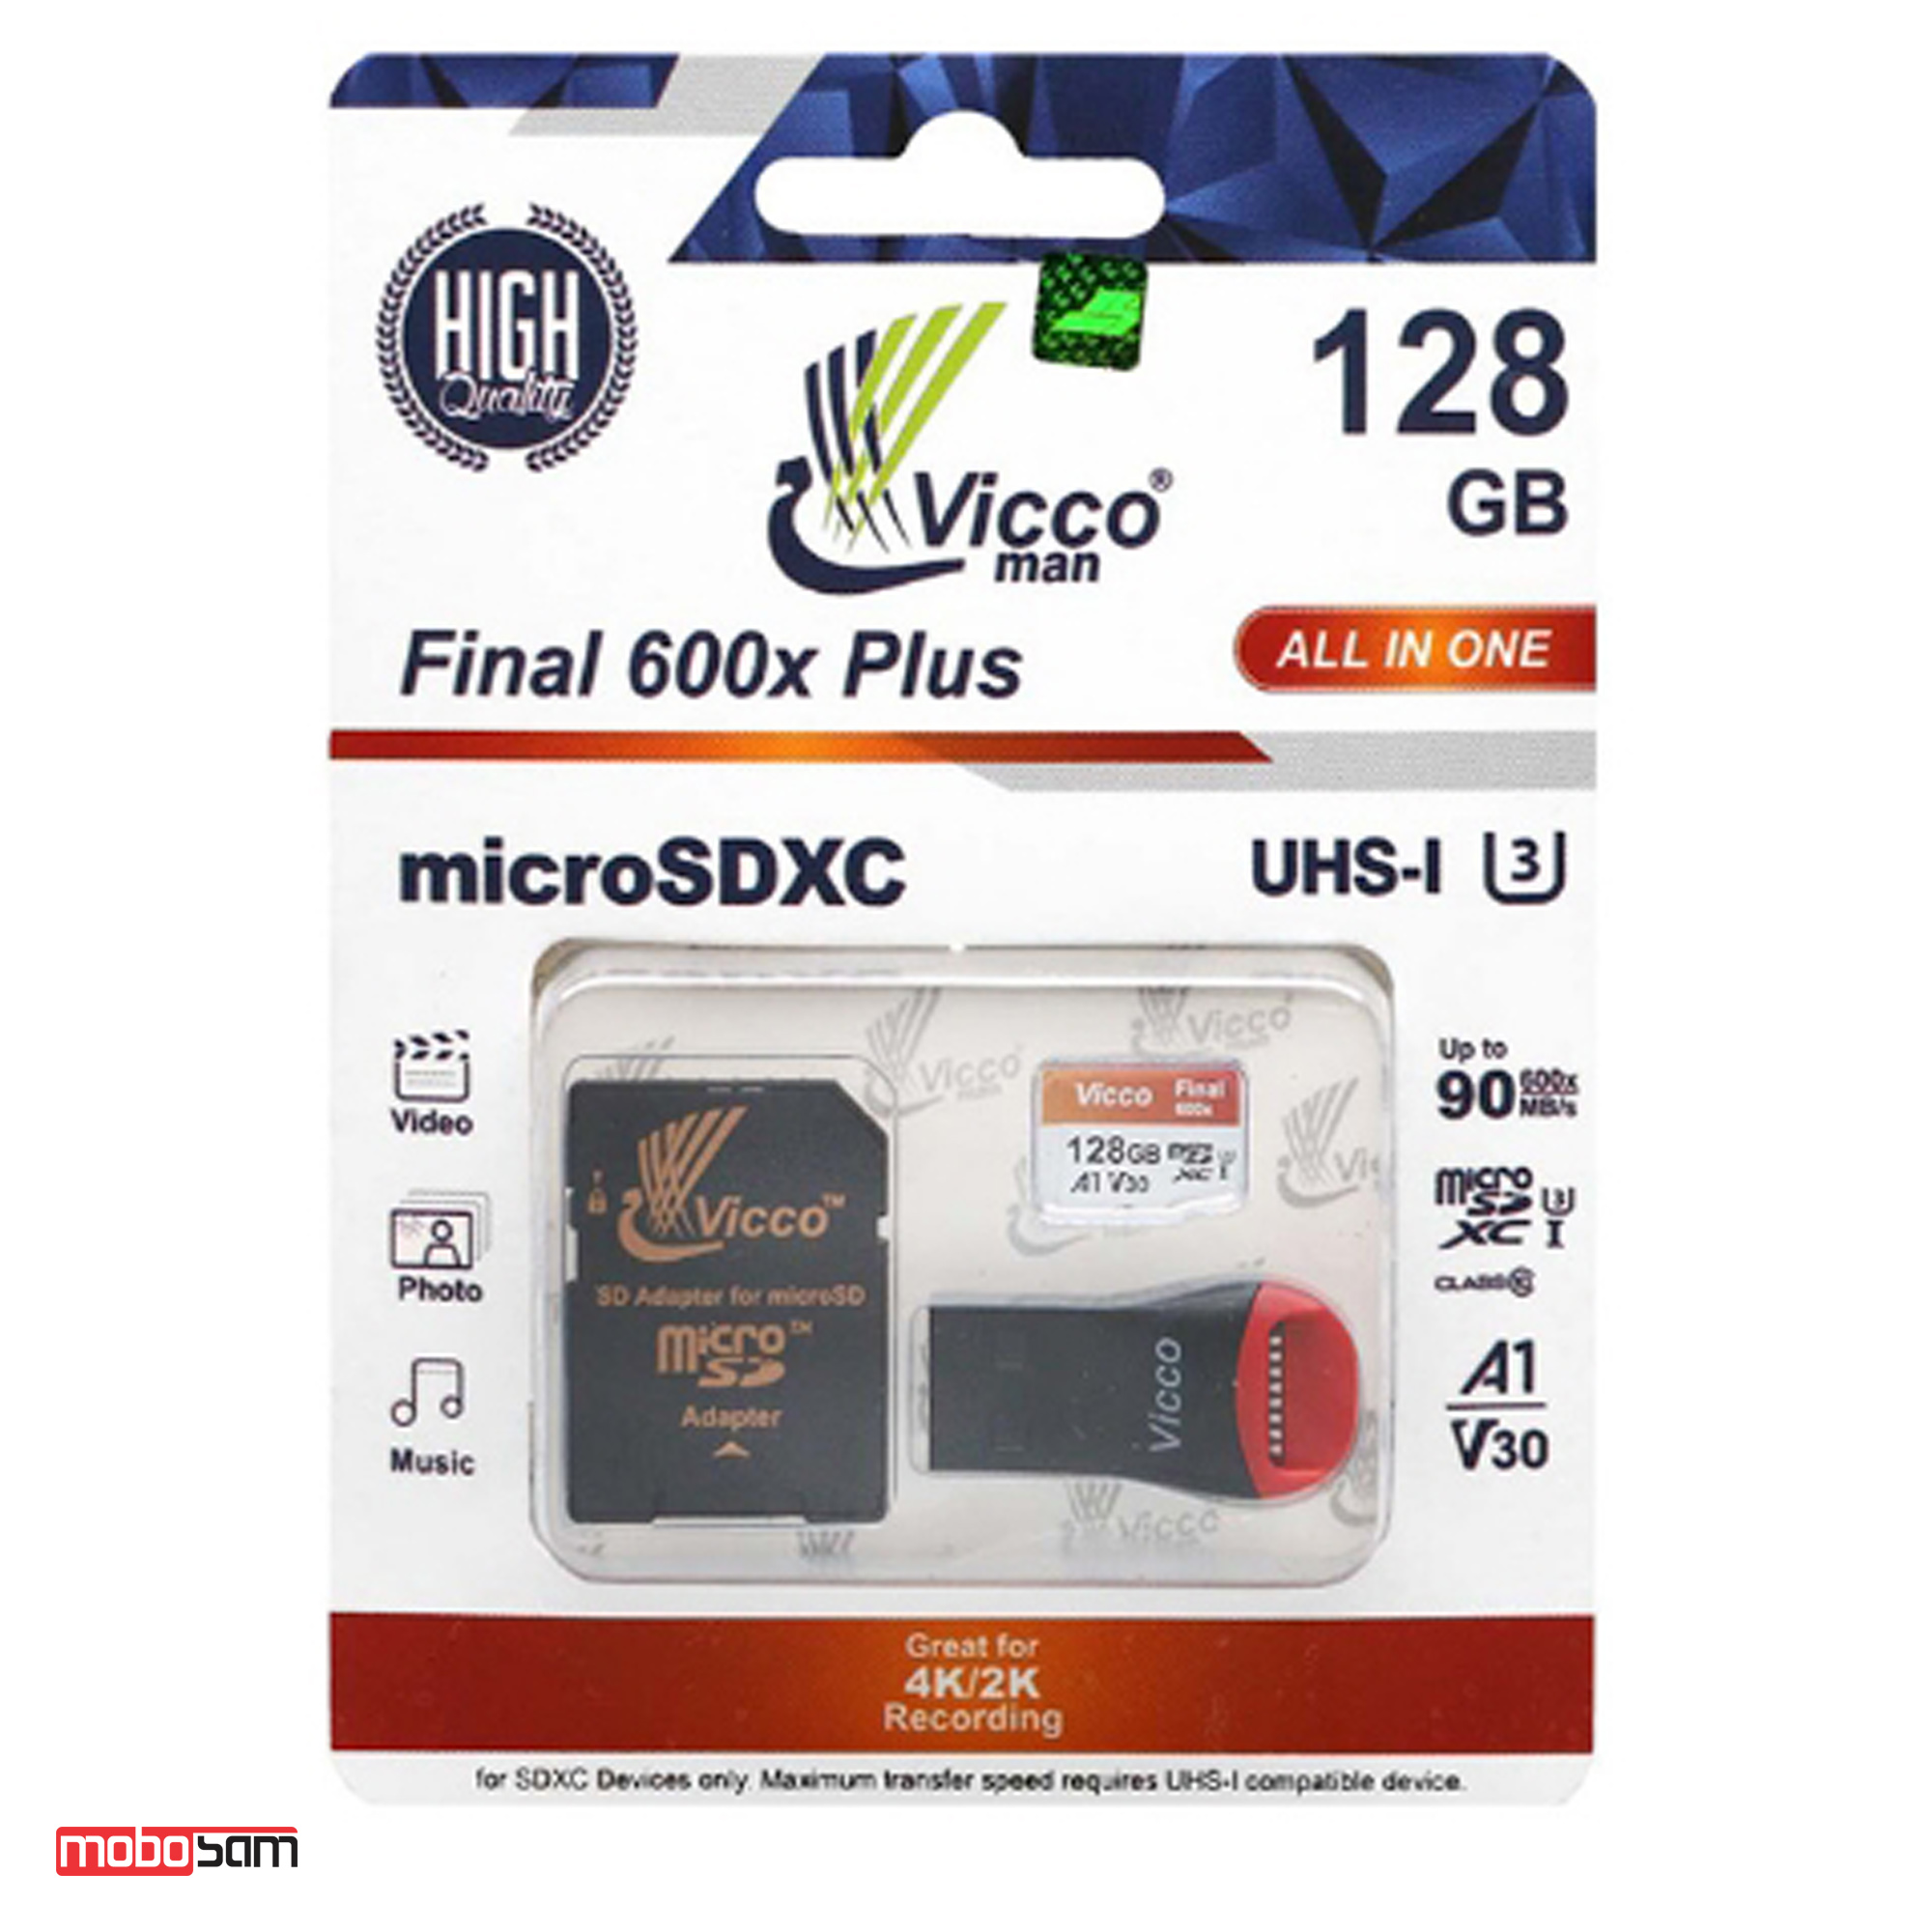 کارت حافظه microSDHC ویکومن مدل Final 600X Plus کلاس 10 استاندارد سرعت 90MBps ظرفیت 128 گیگابایت + رم ریدر و خشاب SD